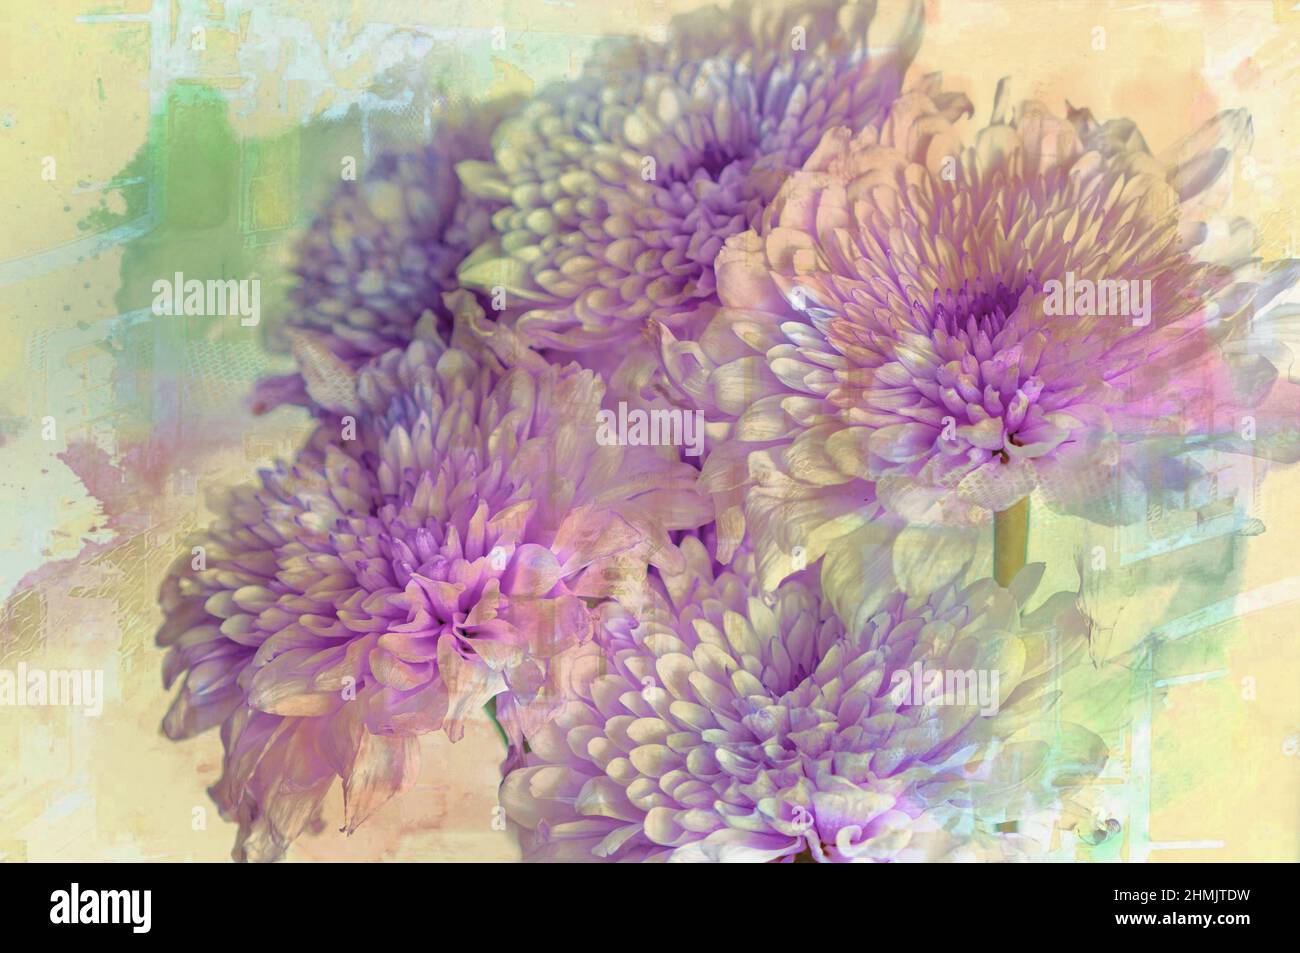 Imágenes de Arte de Pared de Flores luego procesadas como imágenes de arte fino con software de edición. Imágenes ideales para tipos Foto de stock